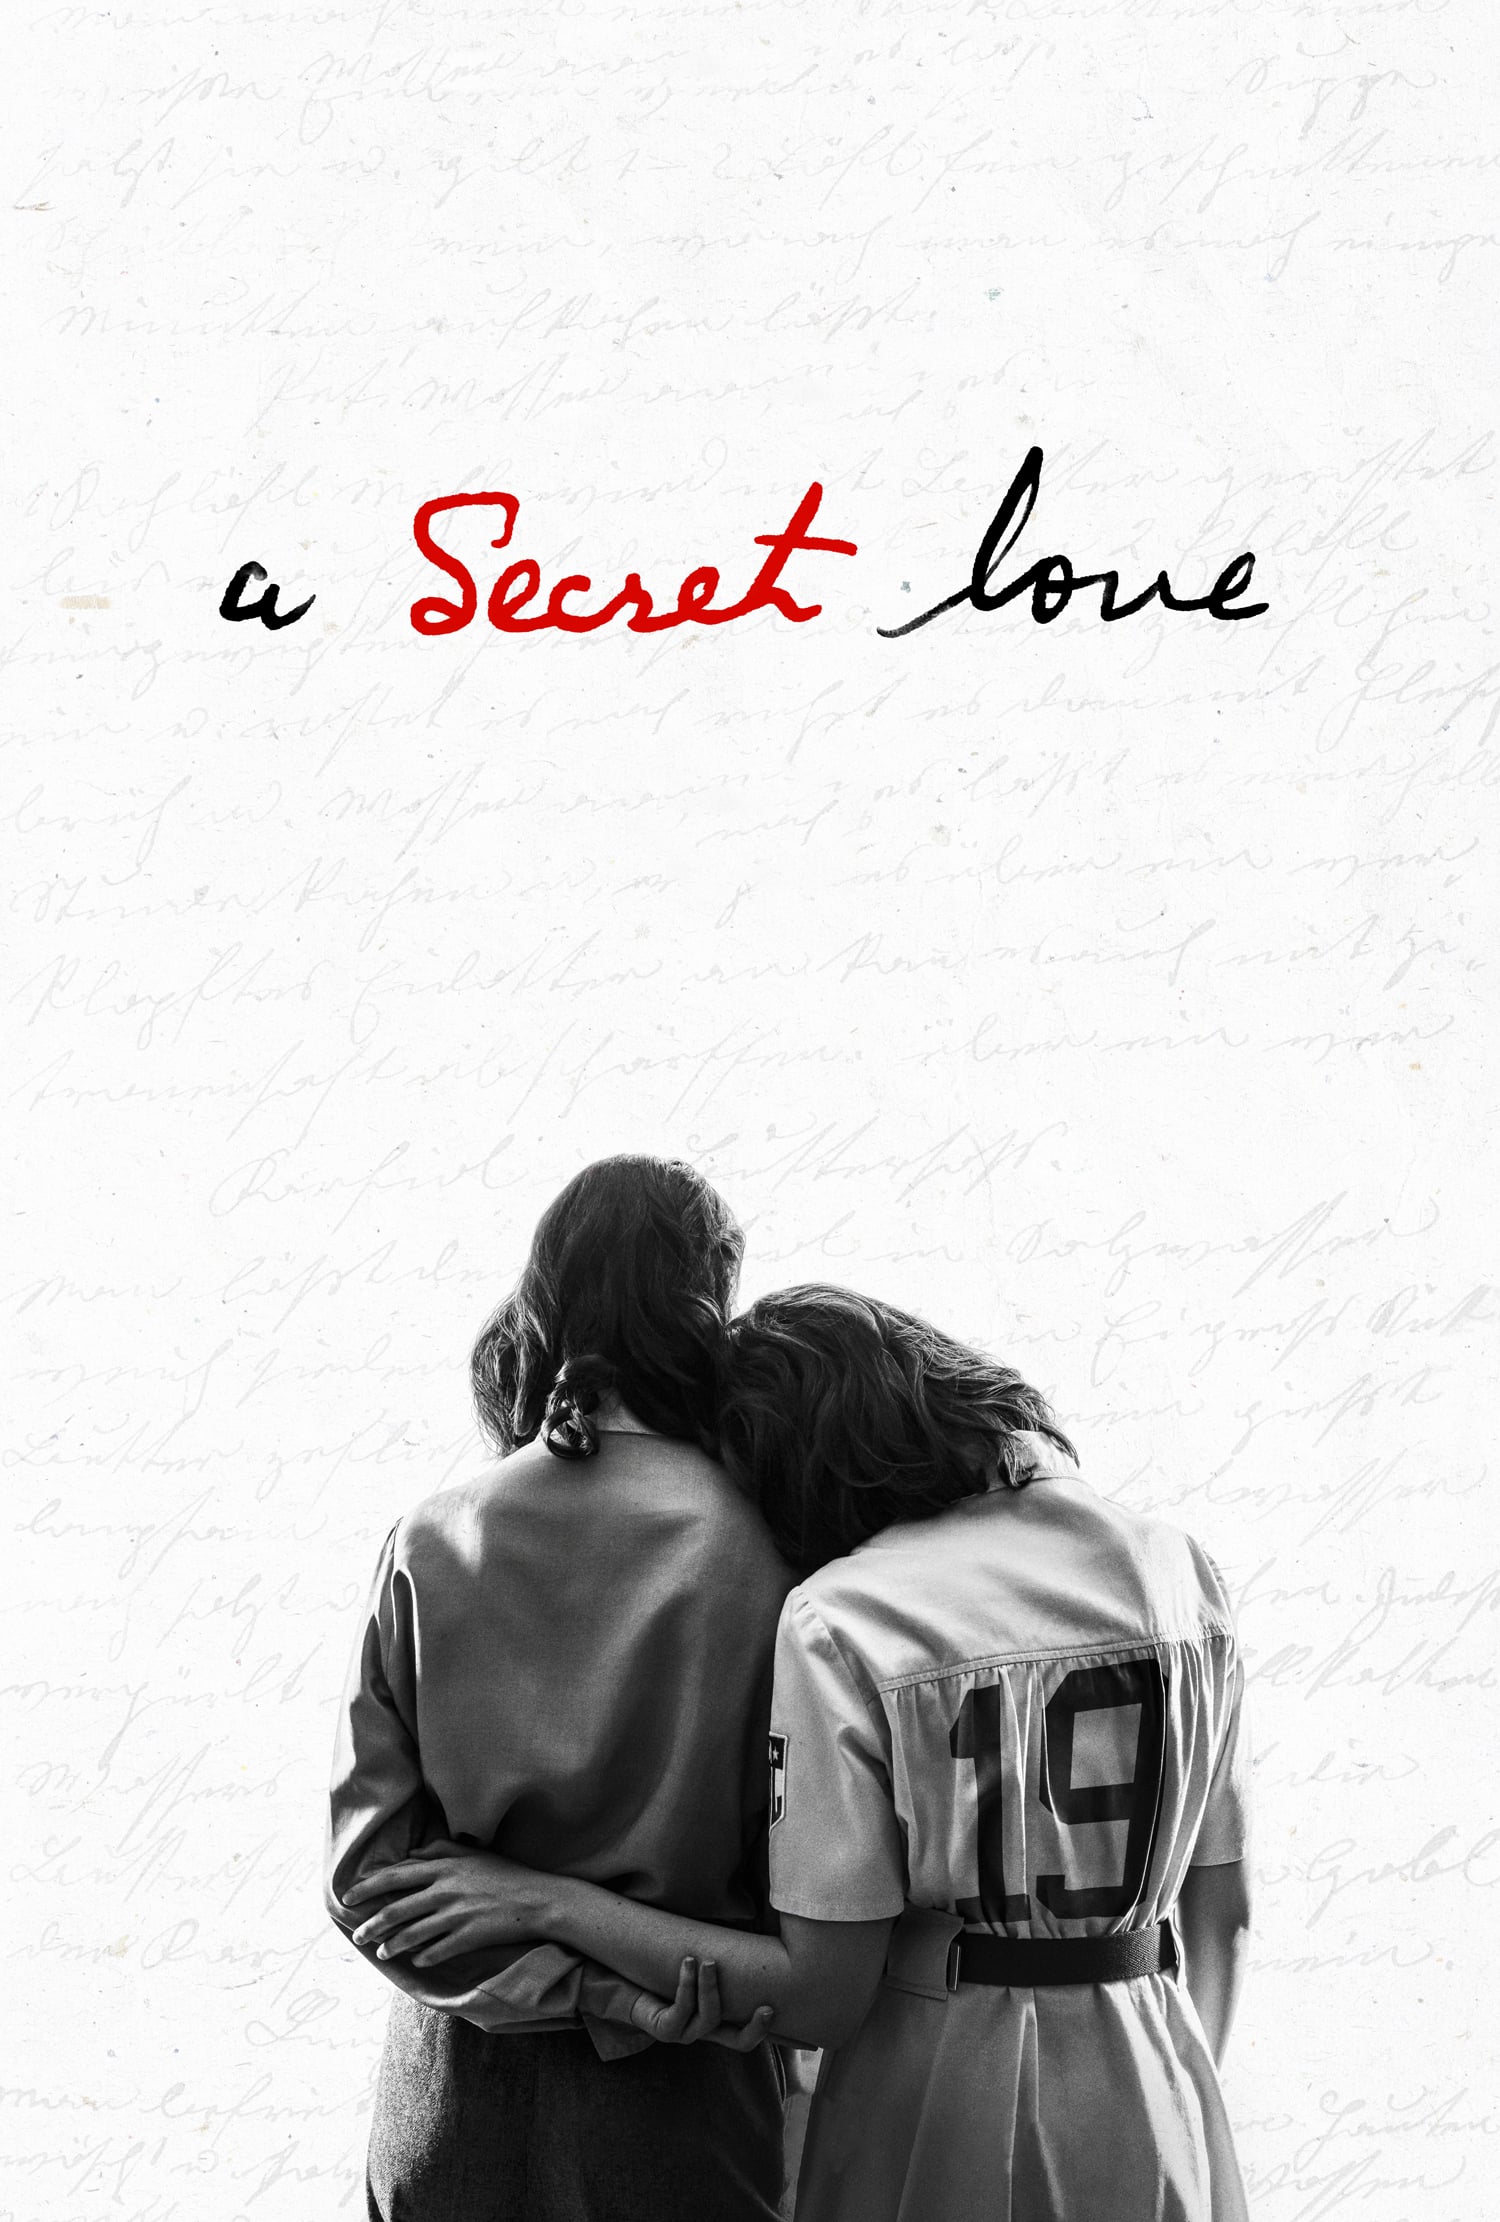 Caratula de A Secret Love (A secret love) 